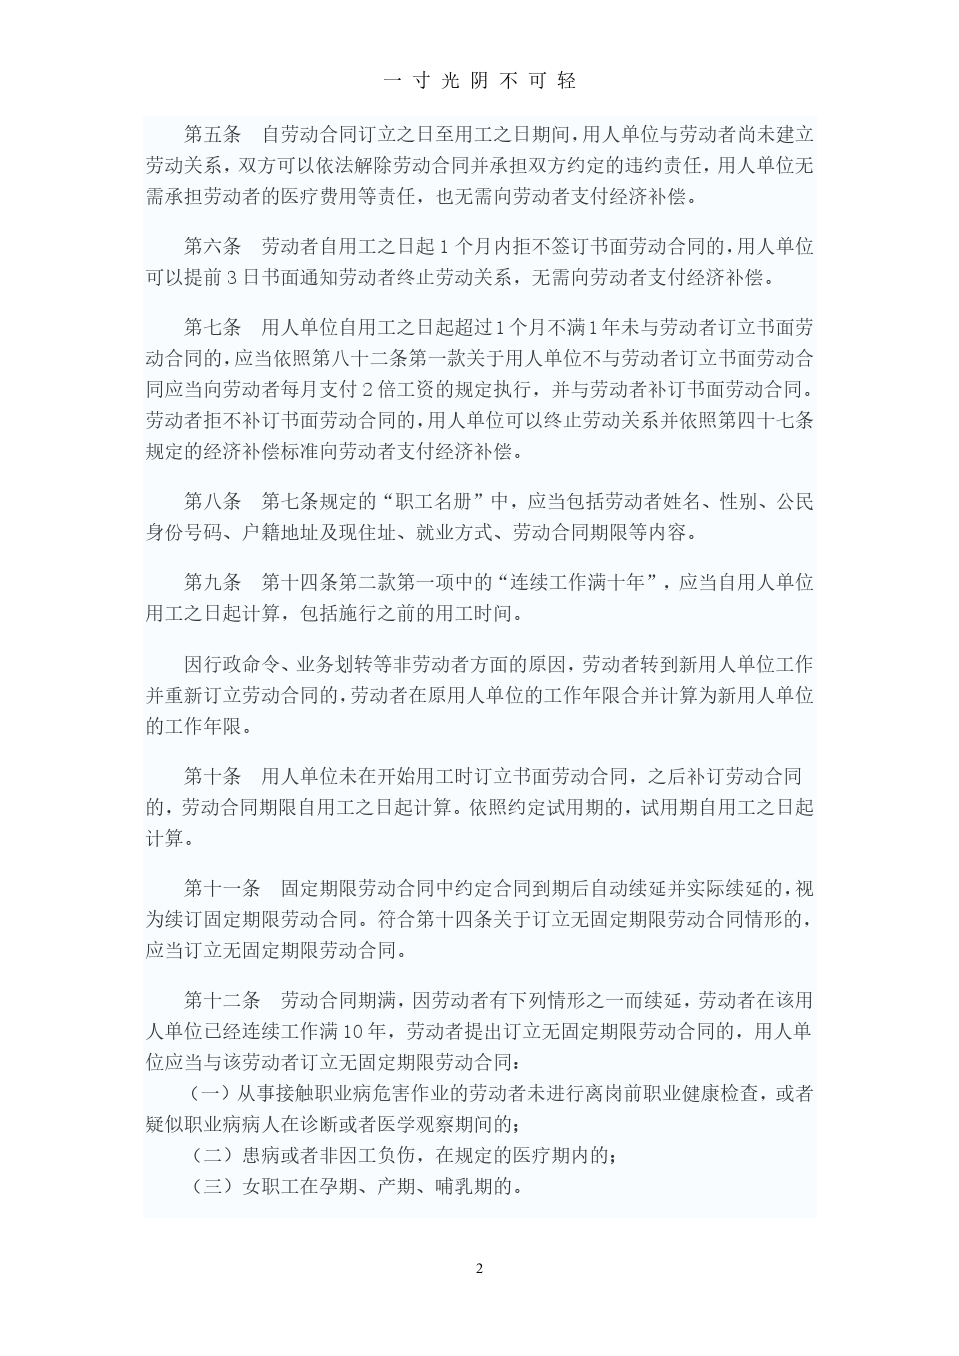 中华人民共和国劳动合同法实施条例.pdf